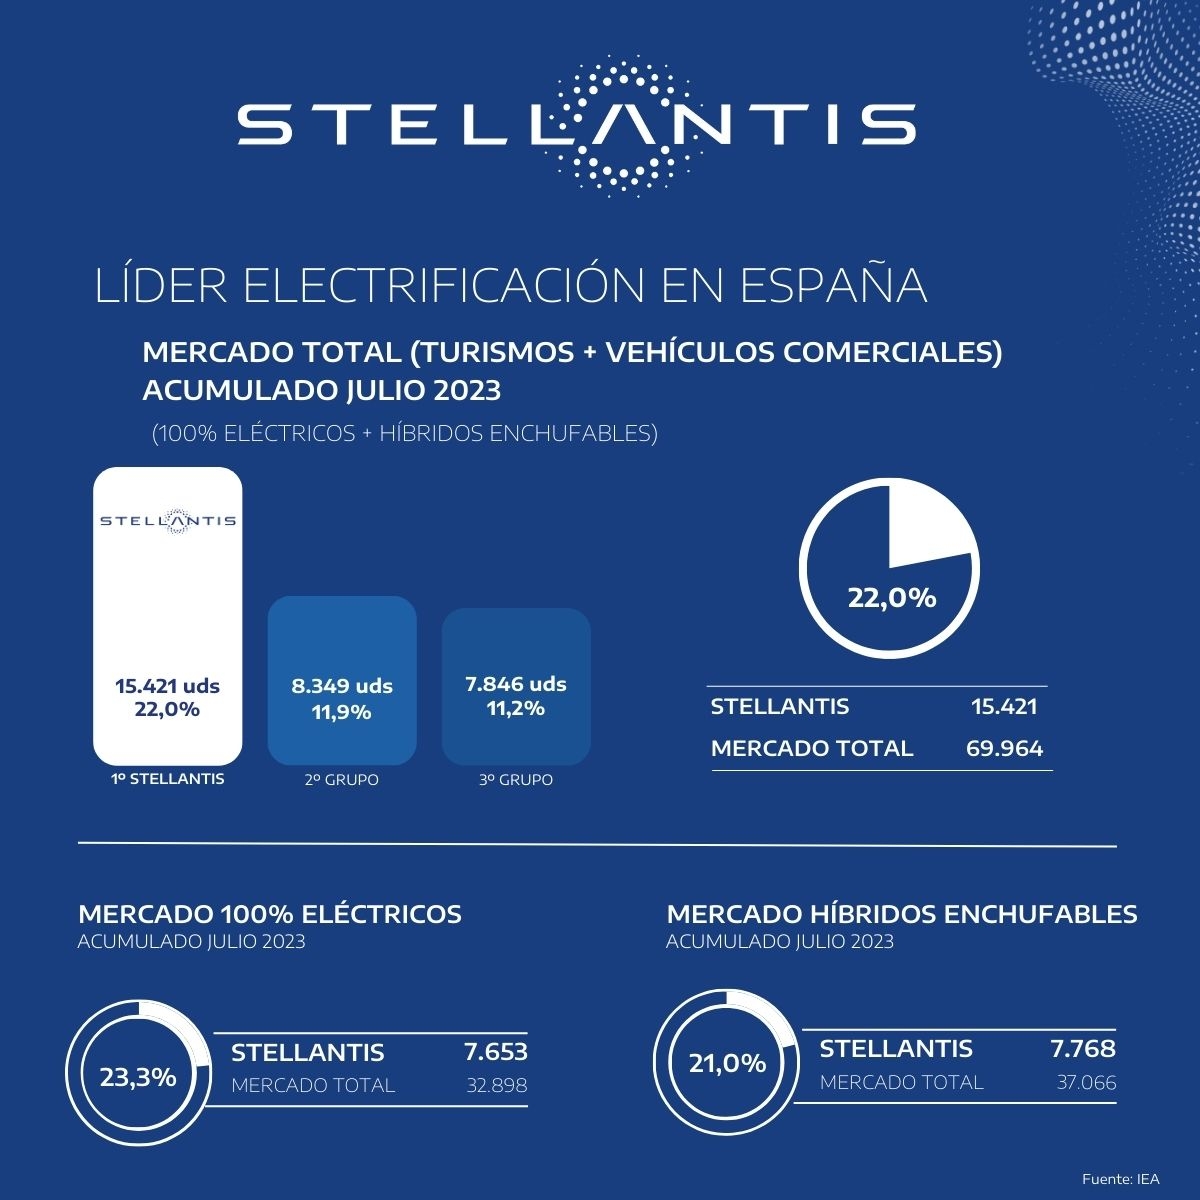 Stellantis lidera el mercado total electrificado en España